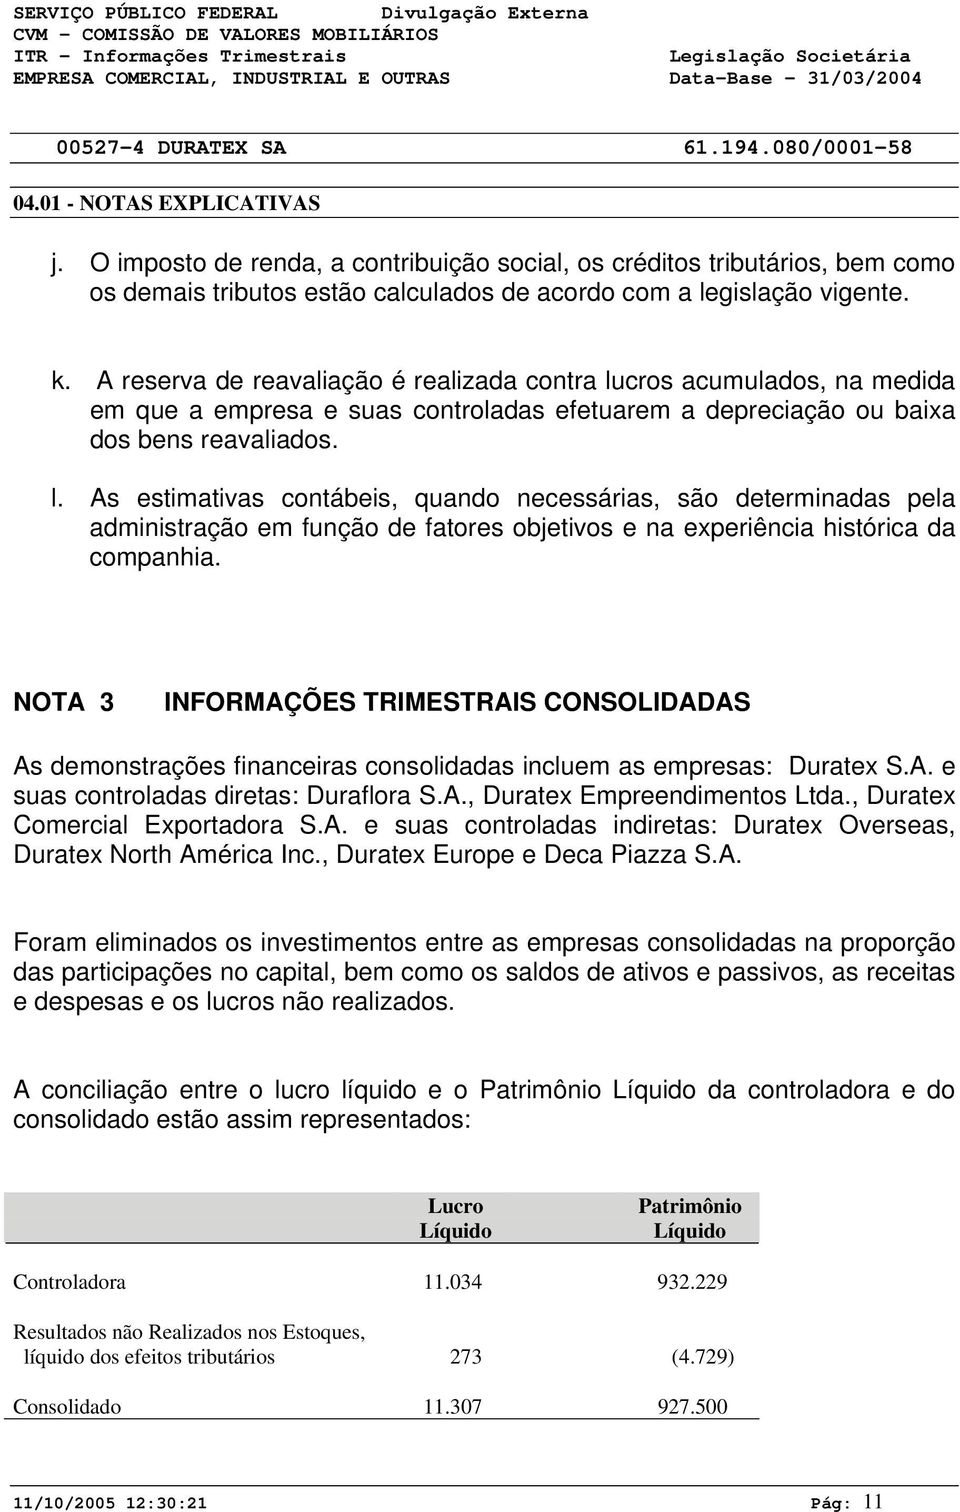 NOTA 3 INFORMAÇÕES TRIMESTRAIS CONSOLIDADAS As demonstrações financeiras consolidadas incluem as empresas: Duratex S.A. e suas controladas diretas: Duraflora S.A., Duratex Empreendimentos Ltda.